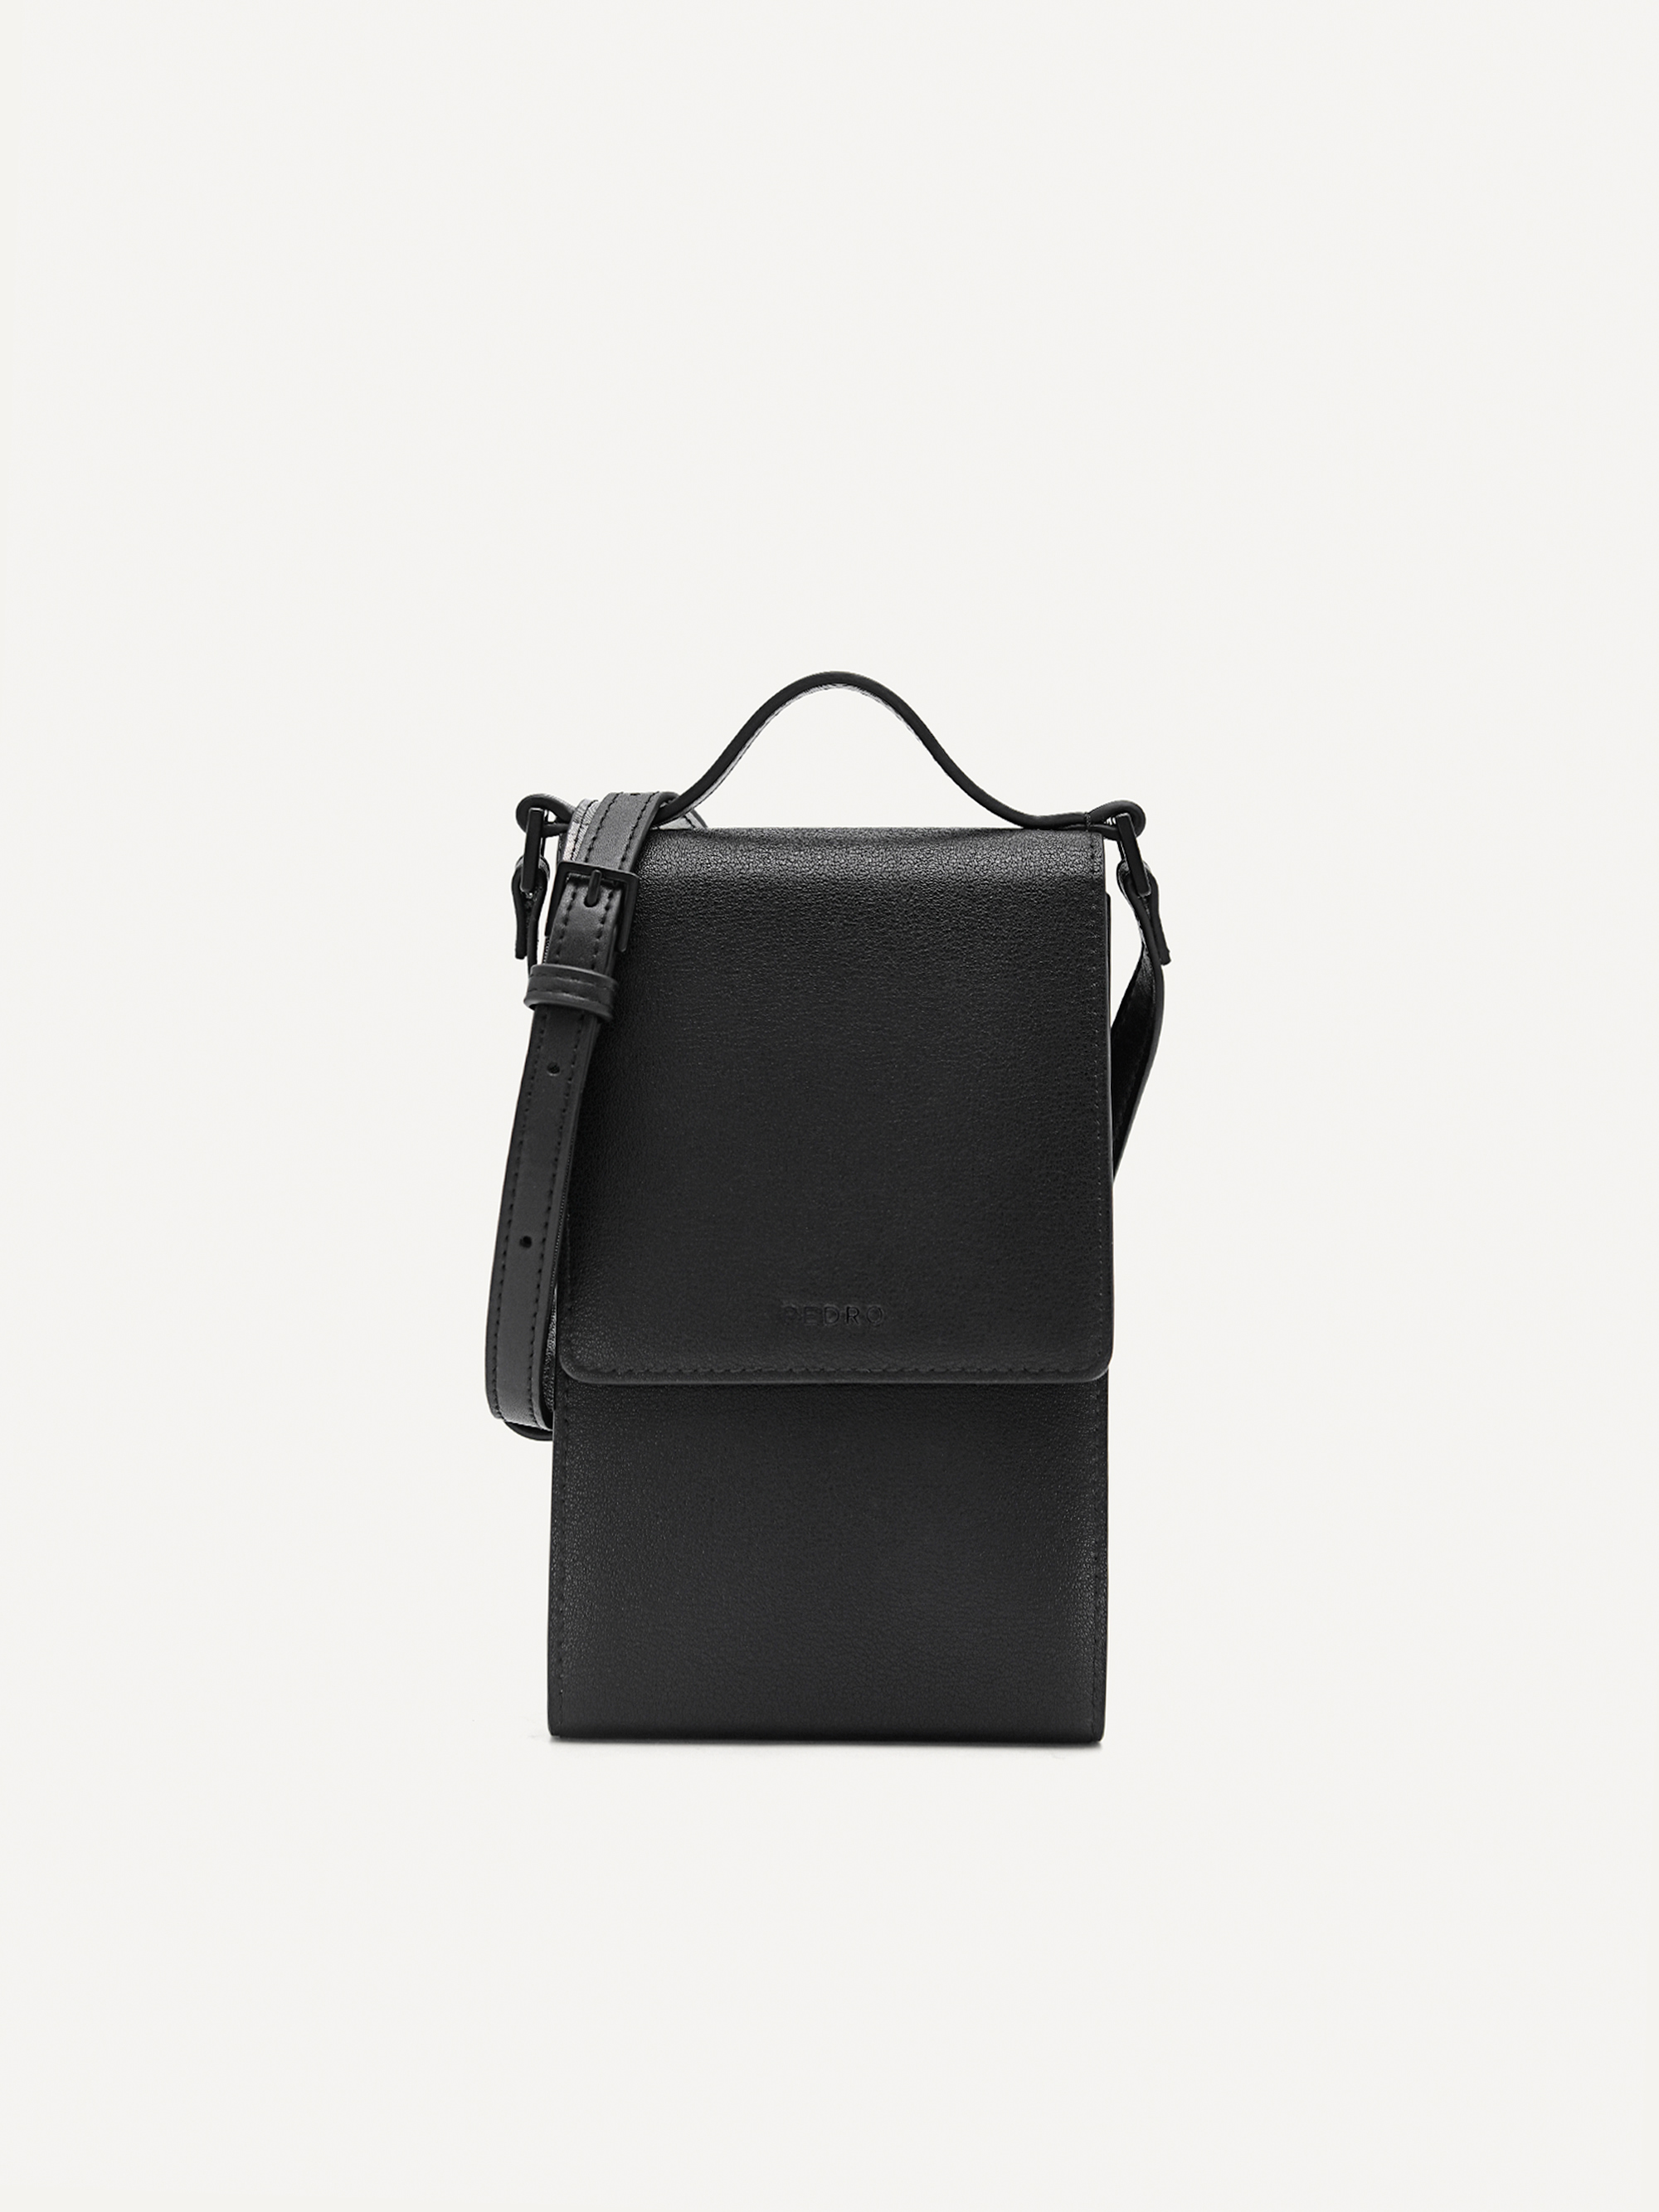 Pedro Tote Handbag/Sling Bag In Black-White, Women's Fashion, Bags